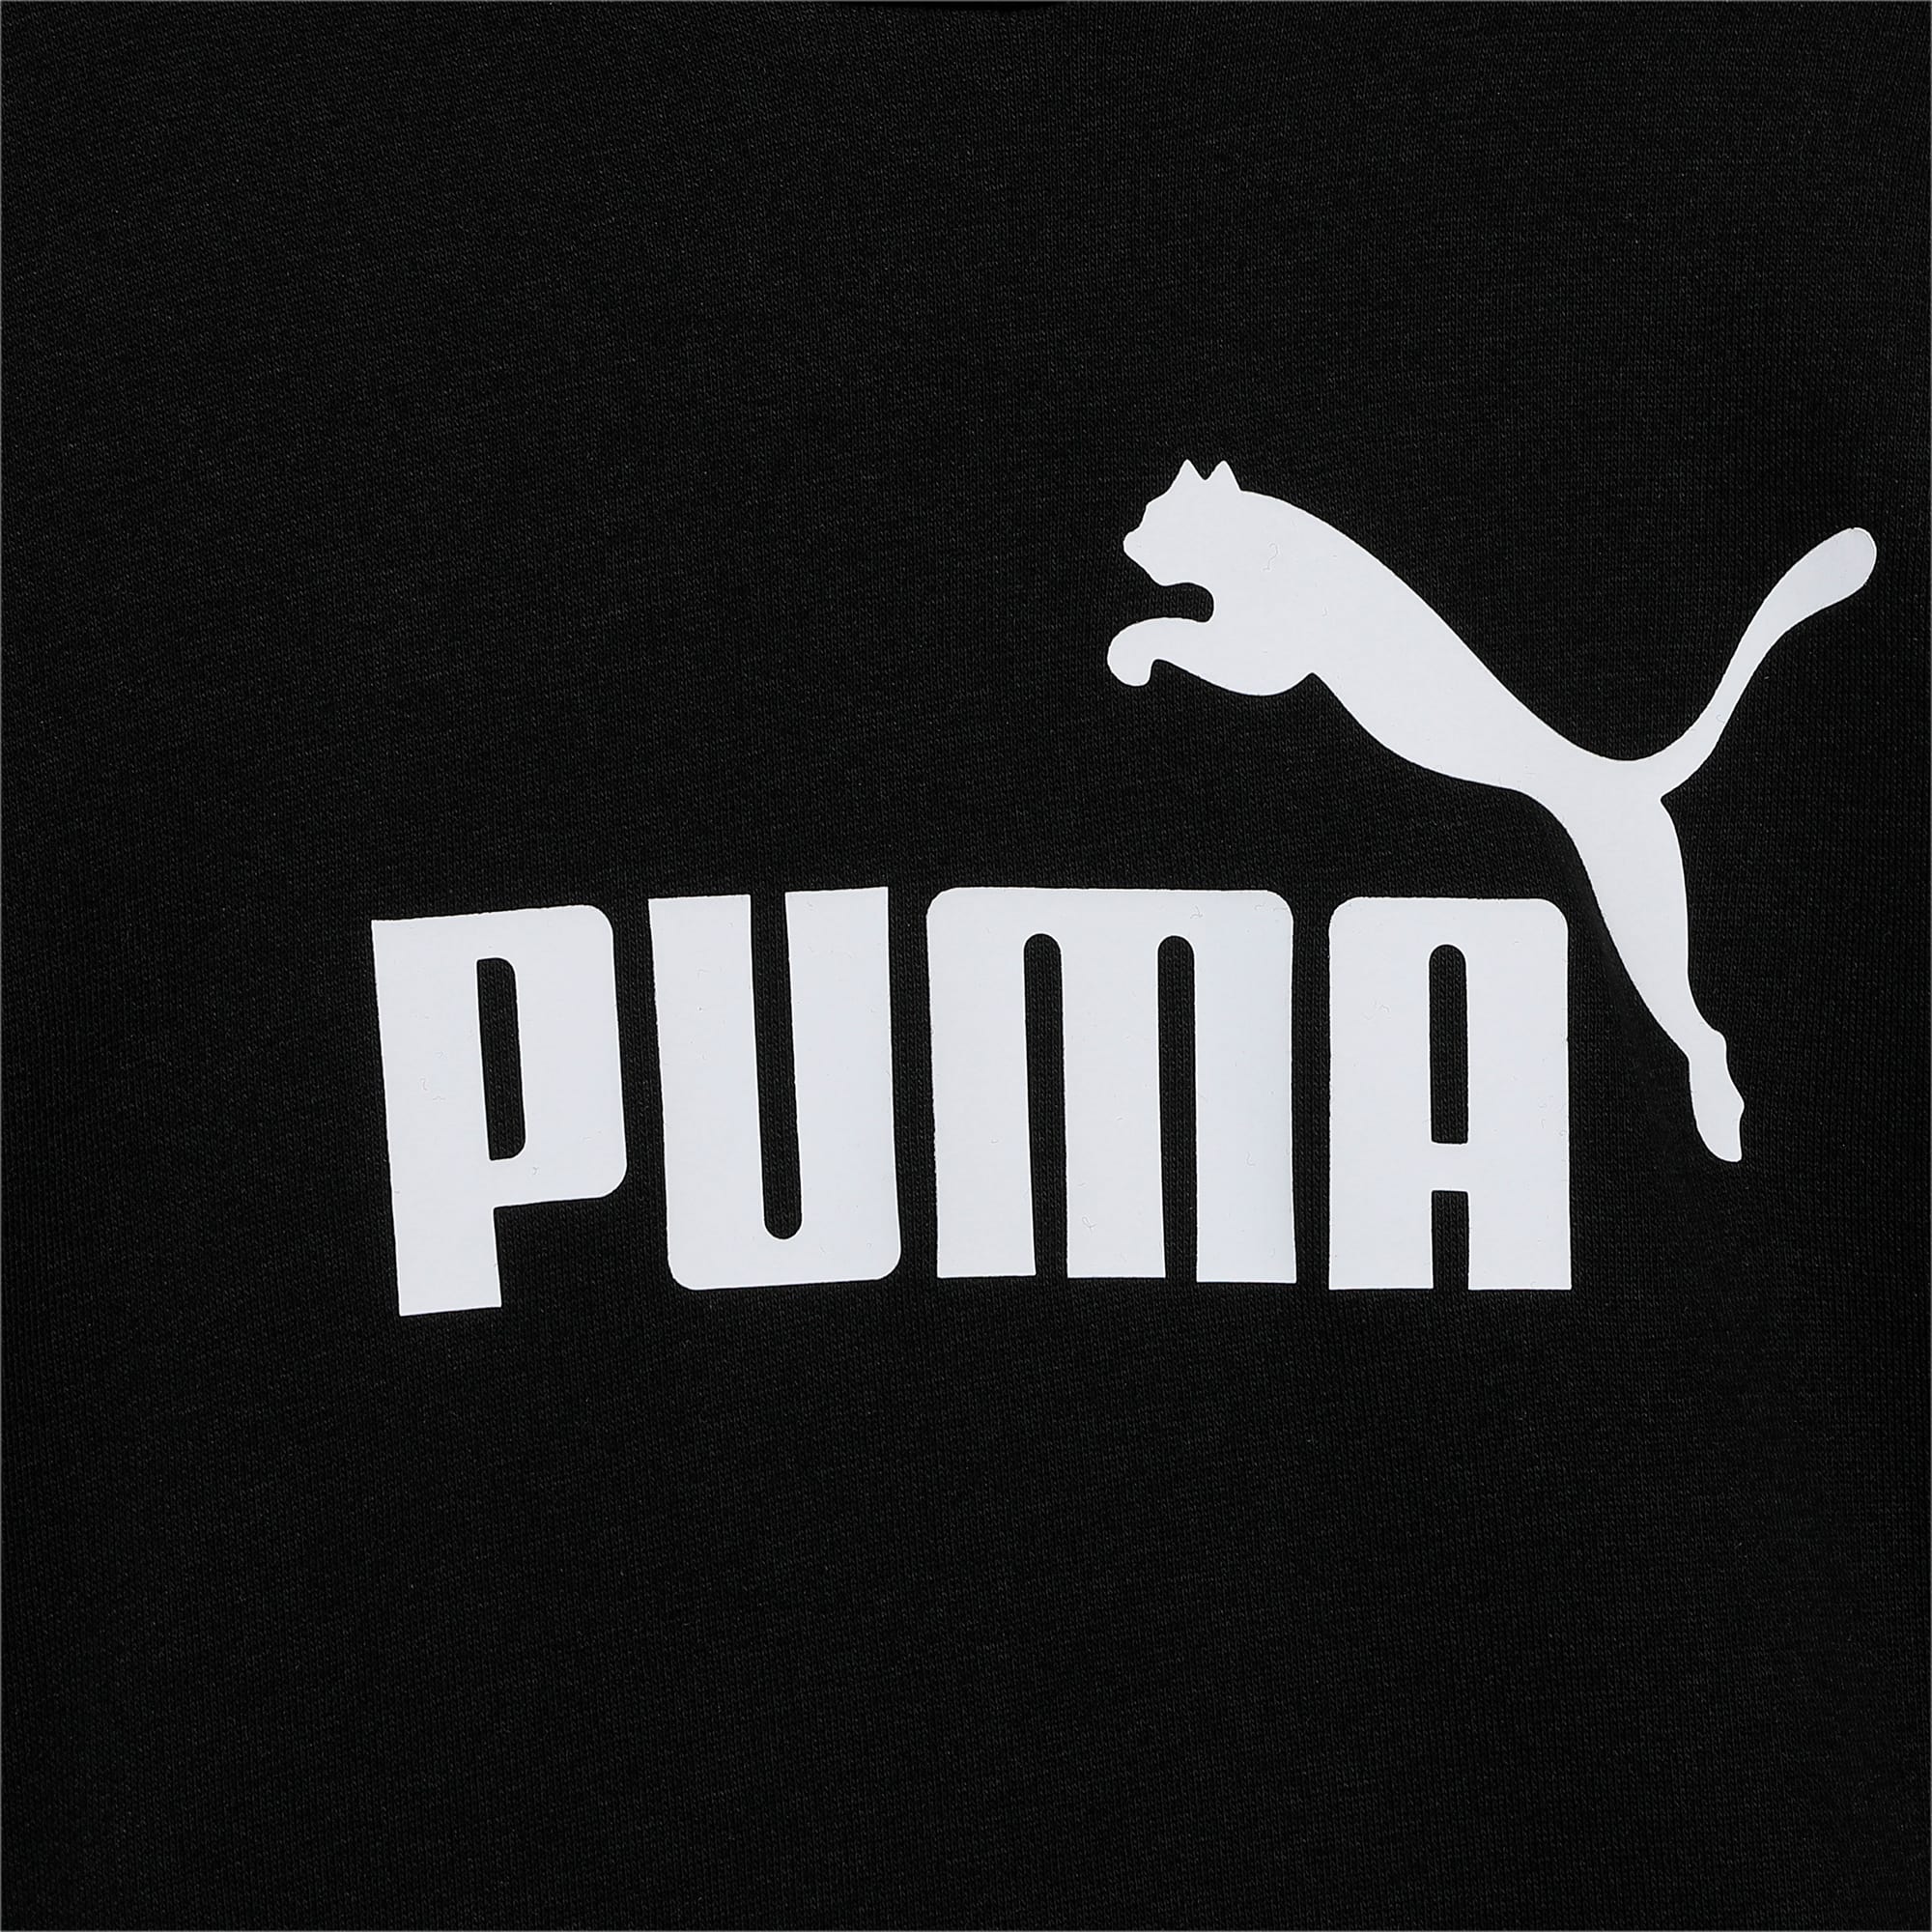 PUMA Essentials Logo Youth Hoodie, Black, Size 4-5Y, Clothing